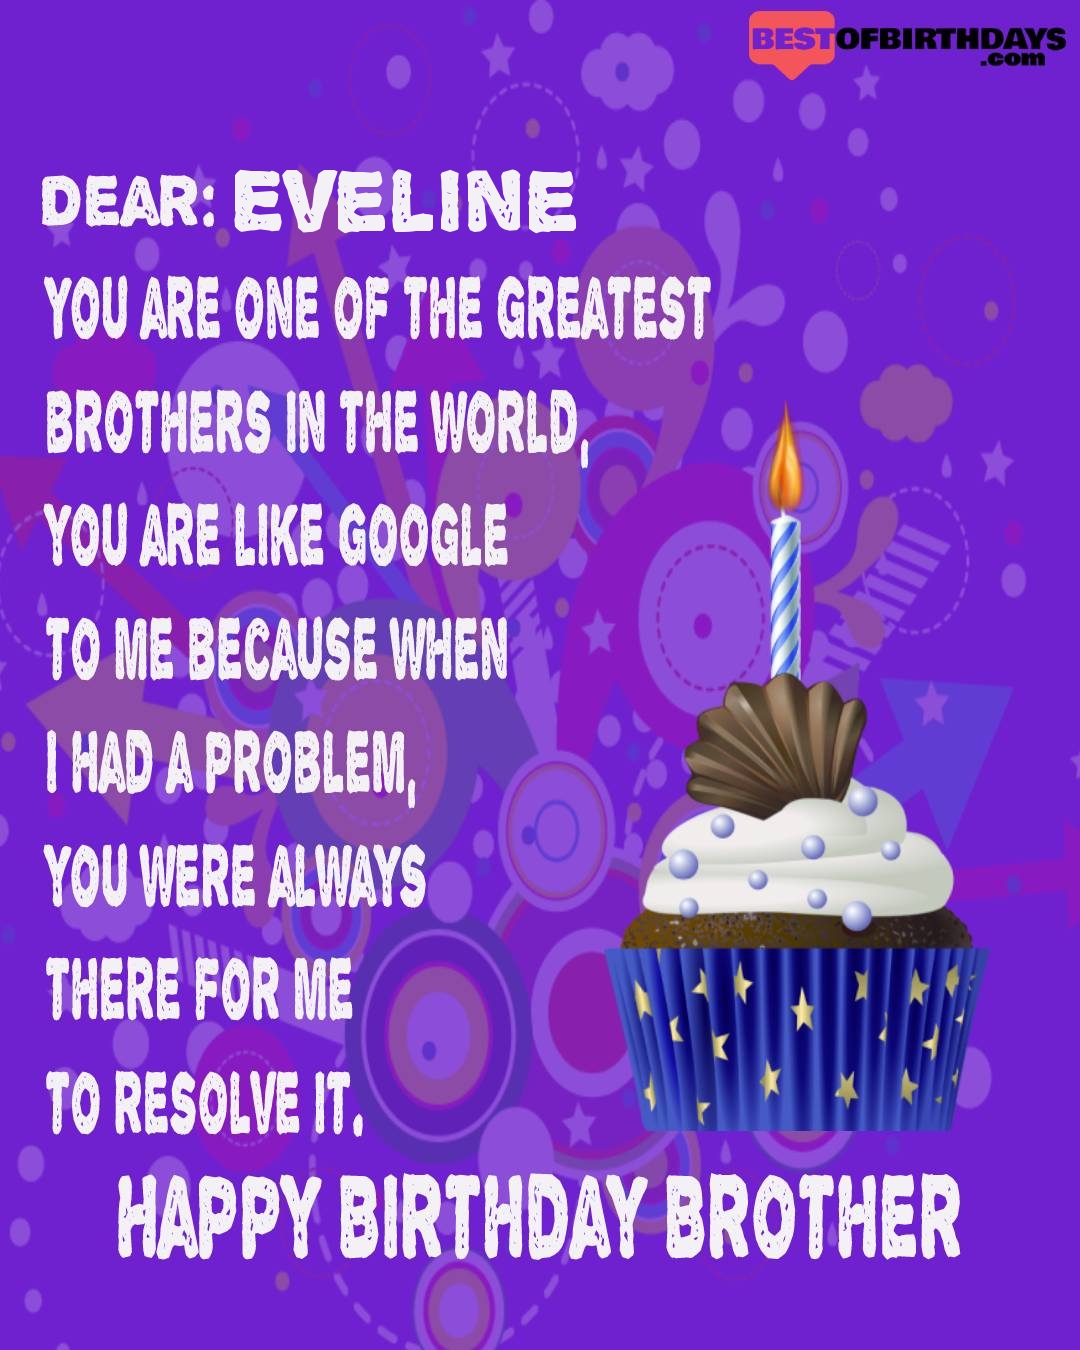 Happy birthday eveline bhai brother bro